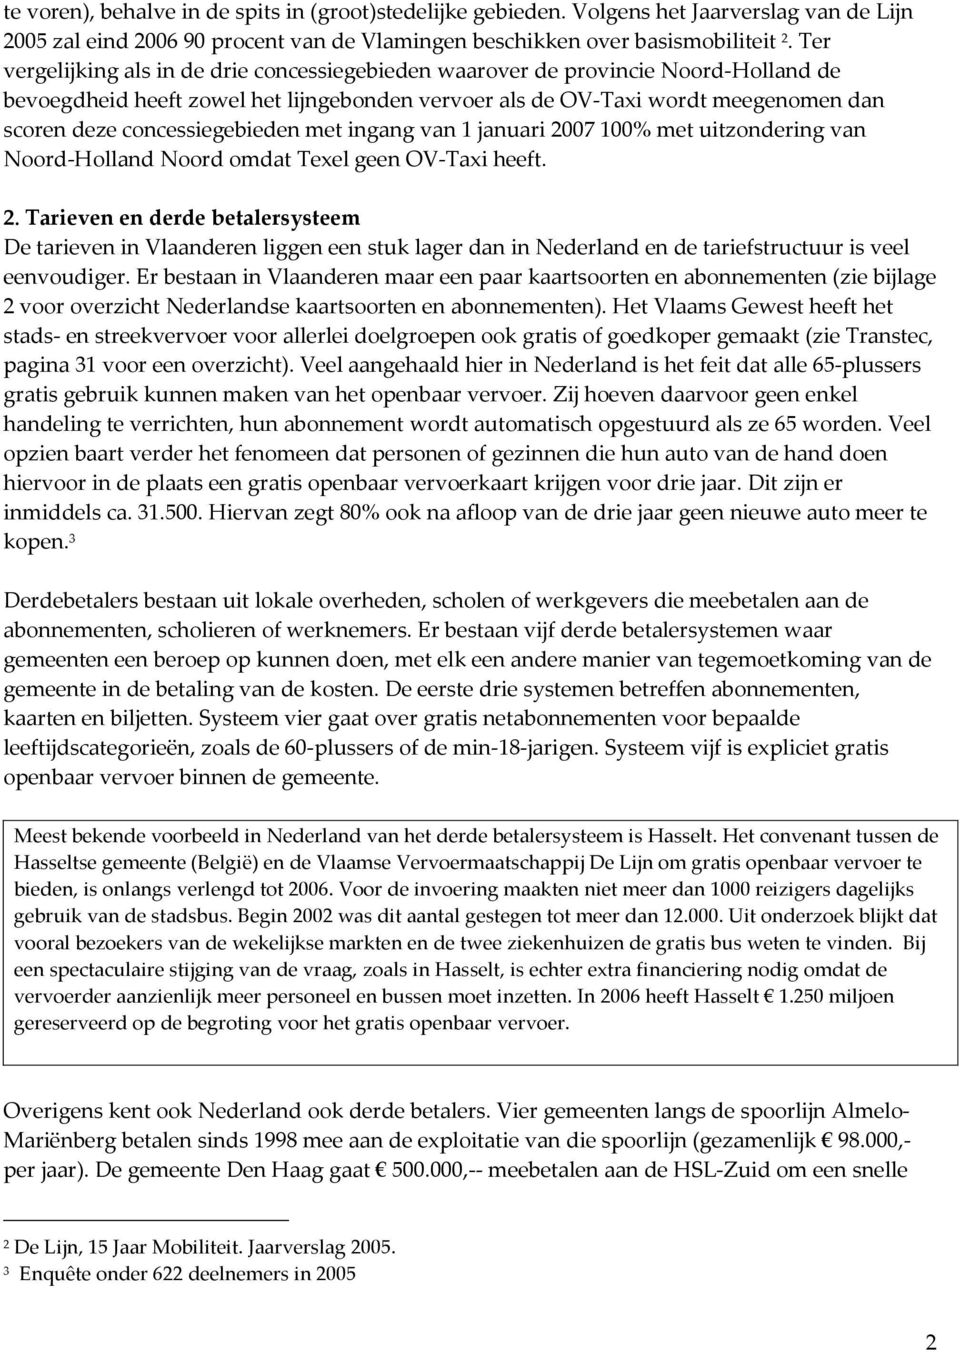 concessiegebieden met ingang van 1 januari 2007 100% met uitzondering van Noord-Holland Noord omdat Texel geen OV-Taxi heeft. 2. Tarieven en derde betalersysteem De tarieven in Vlaanderen liggen een stuk lager dan in Nederland en de tariefstructuur is veel eenvoudiger.